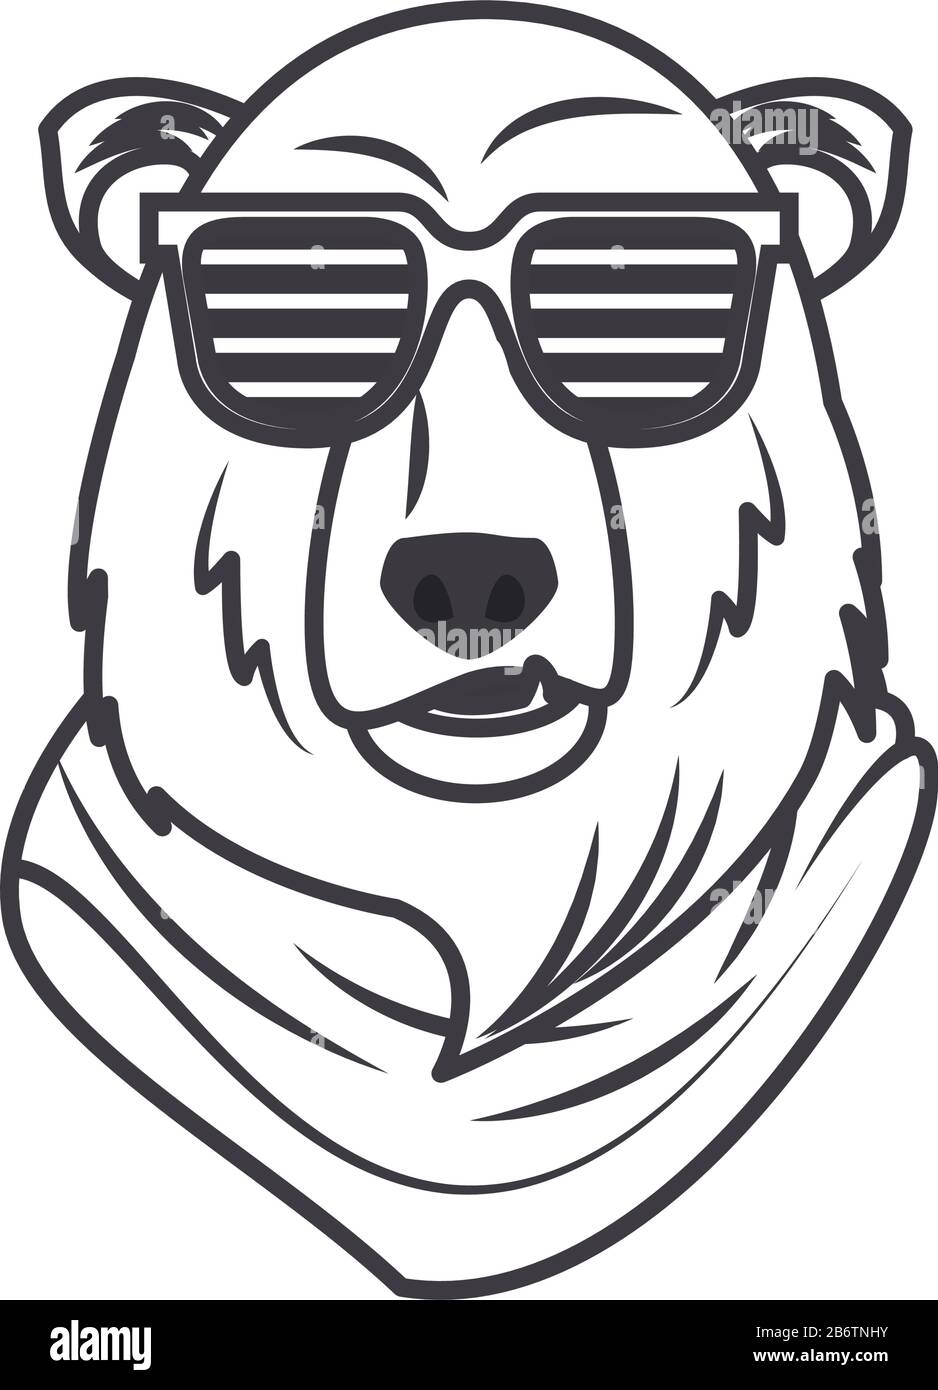 buffo orso grizzly con occhiali da sole stile cool Illustrazione Vettoriale